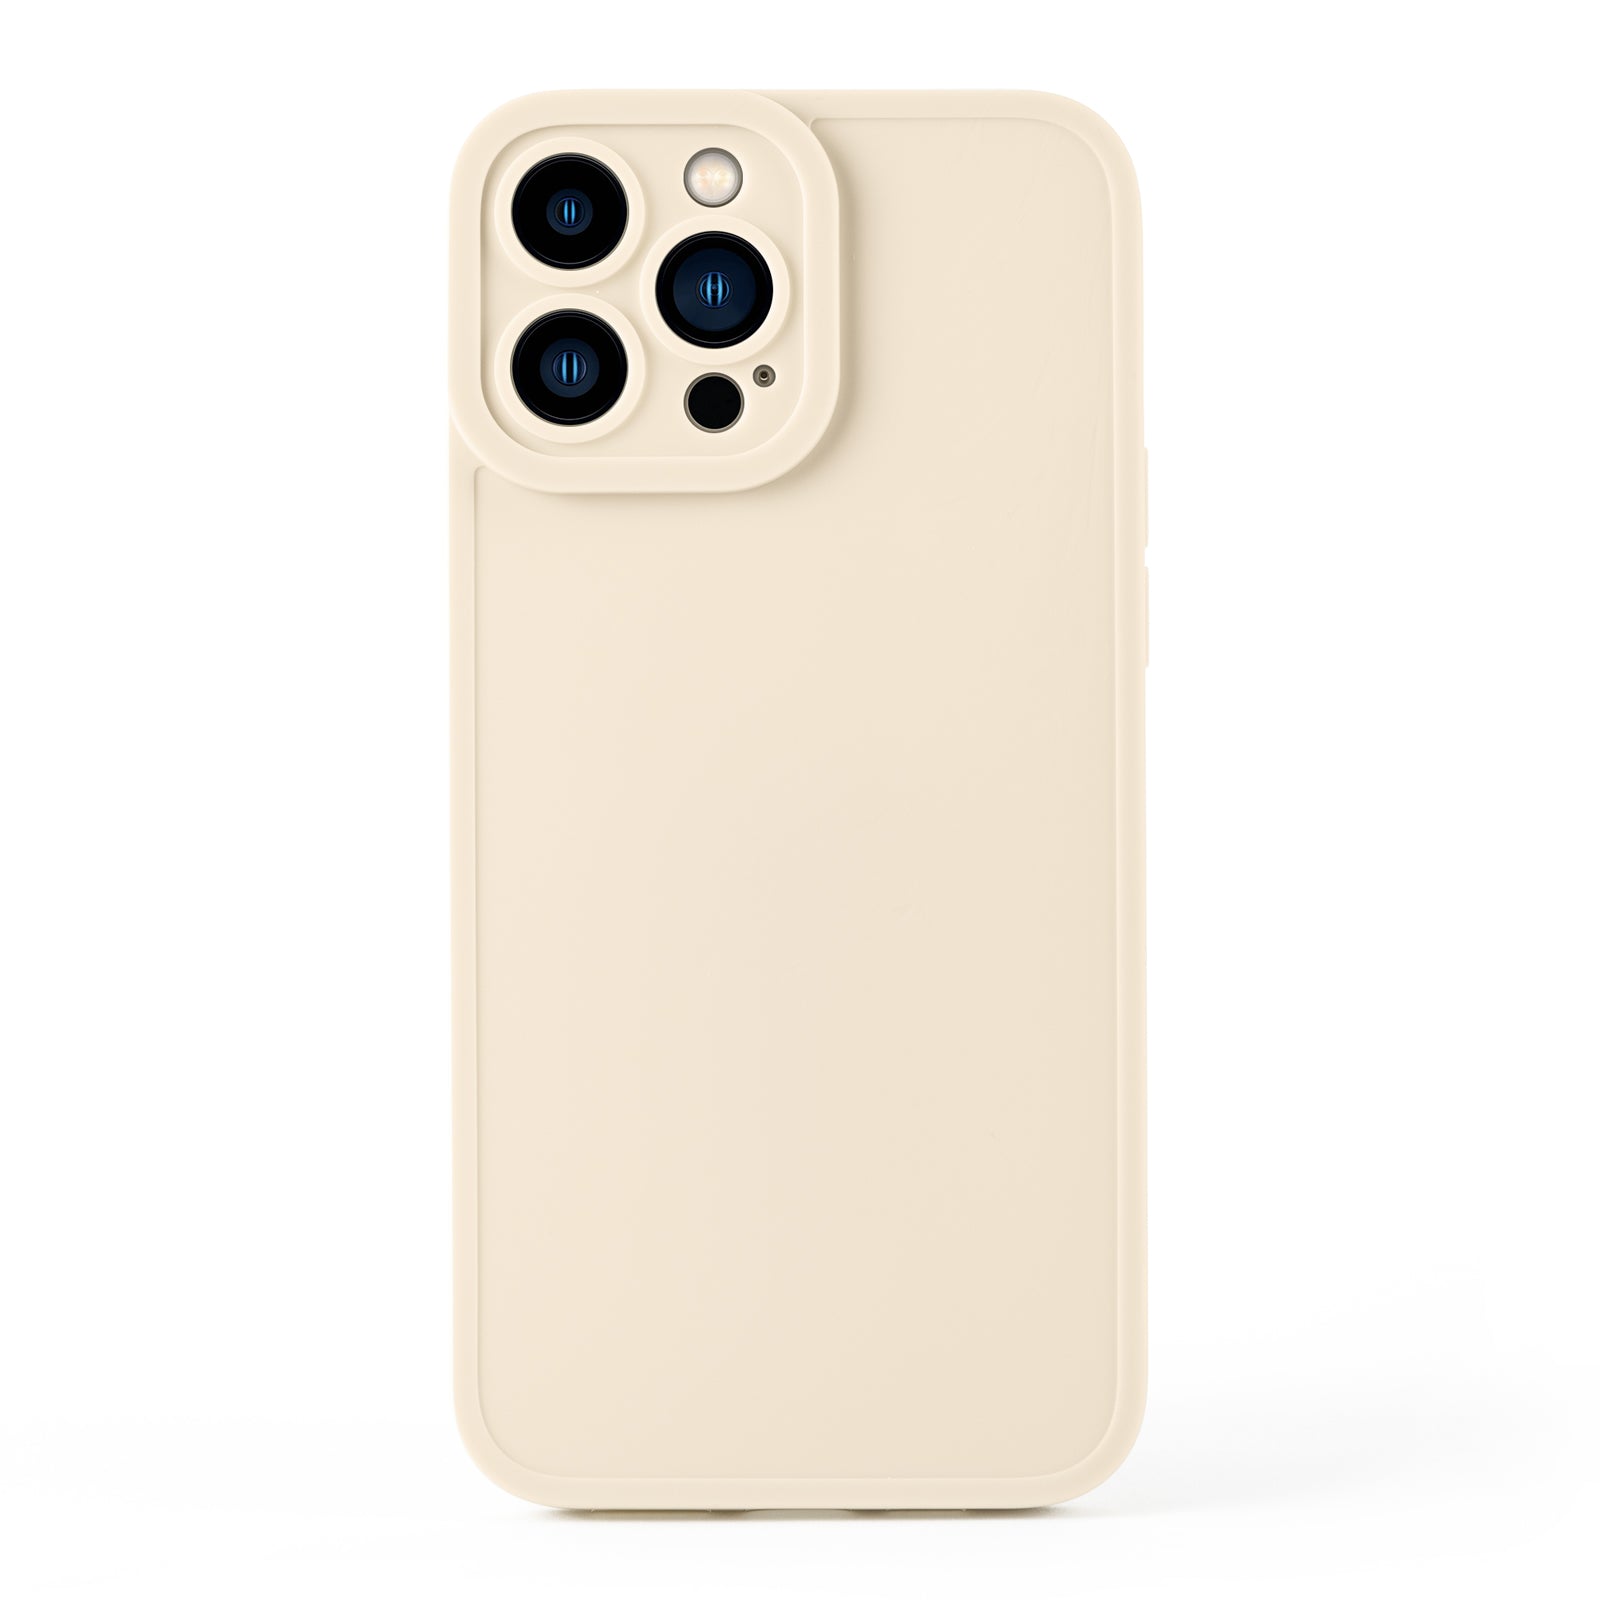 Silicone iPhone Case - Cream